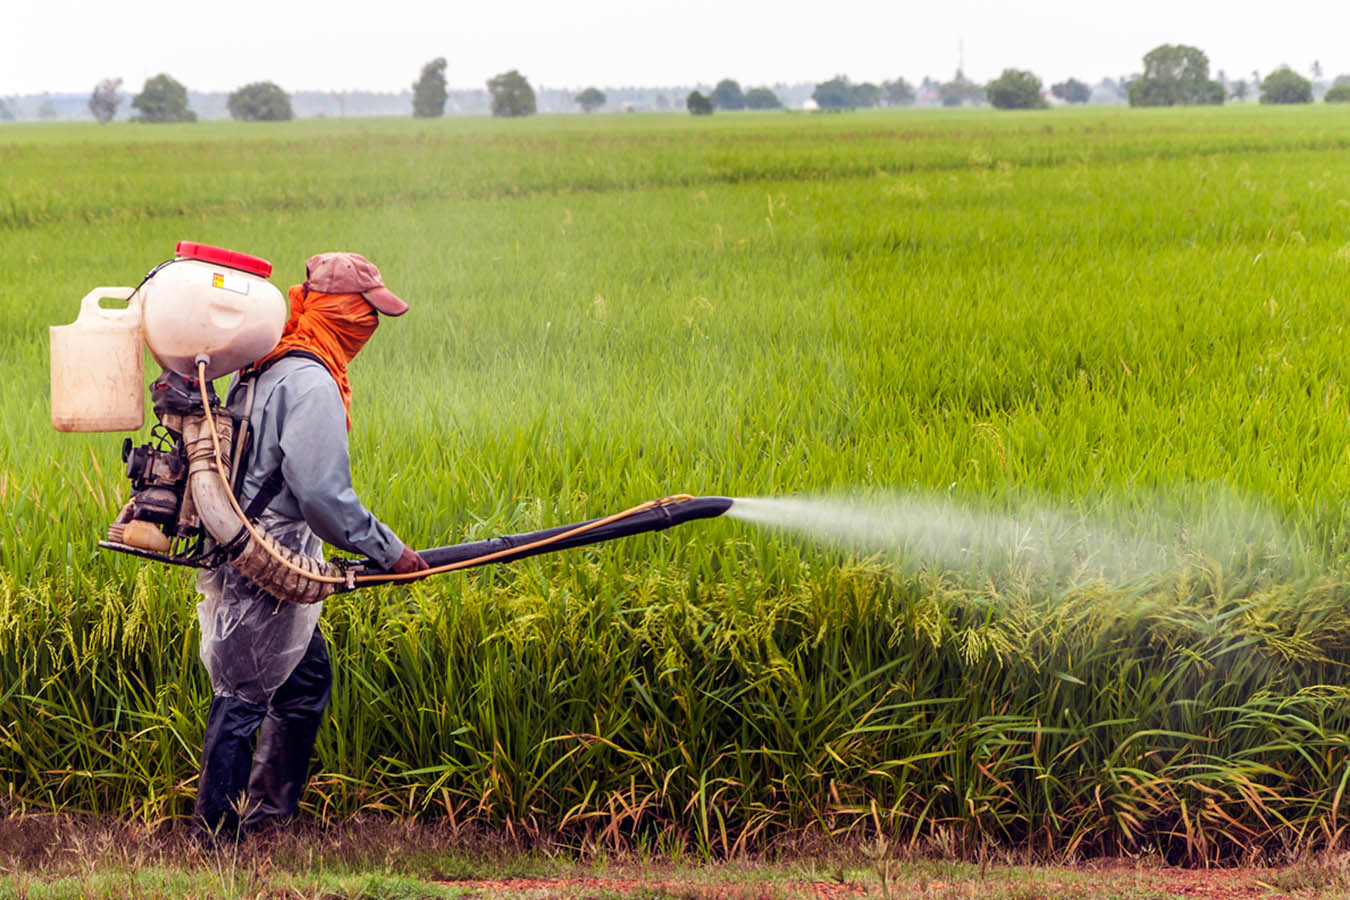 Se cedió a presiones de empresas como Bayer y Monsanto: Narro Céspedes